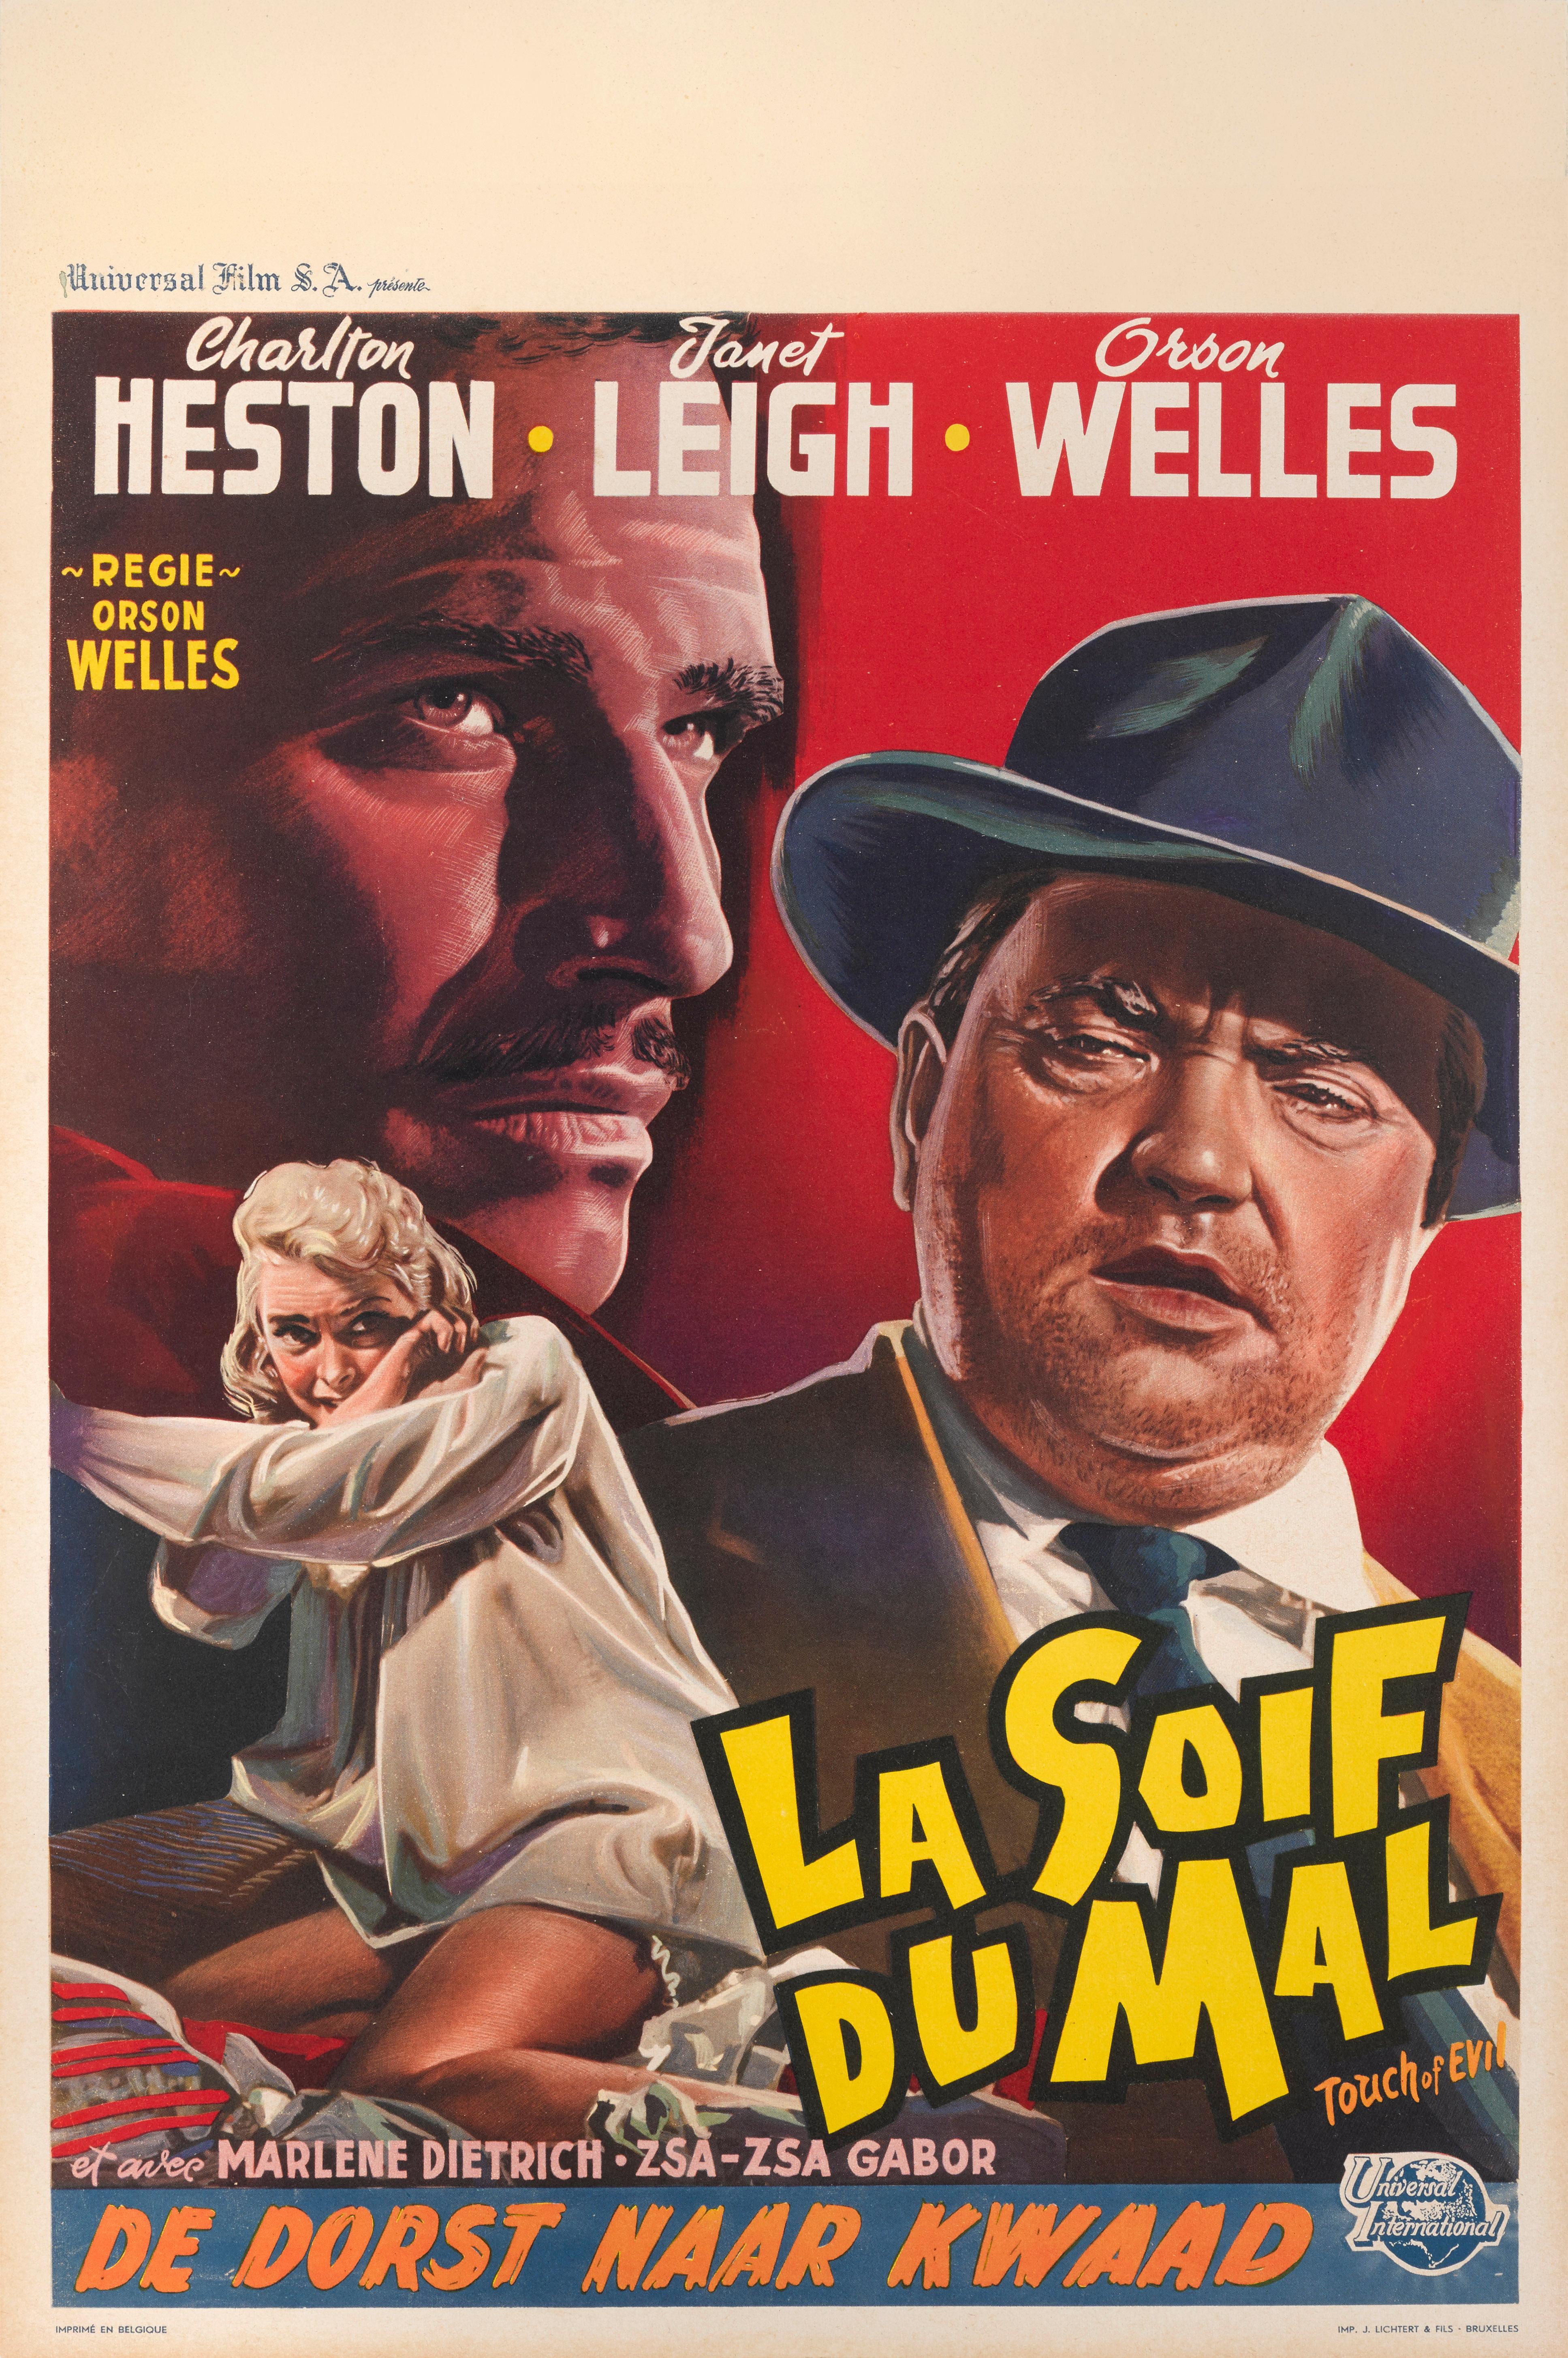 Affiche originale belge pour le film noir d'Orson Welles de 1958.
En plus de réaliser ce film, Orson Welles y joue le rôle principal aux côtés de Charlton Heston et Janet Leigh.
Ce poster est soutenu par une toile de conservation. Il serait expédié